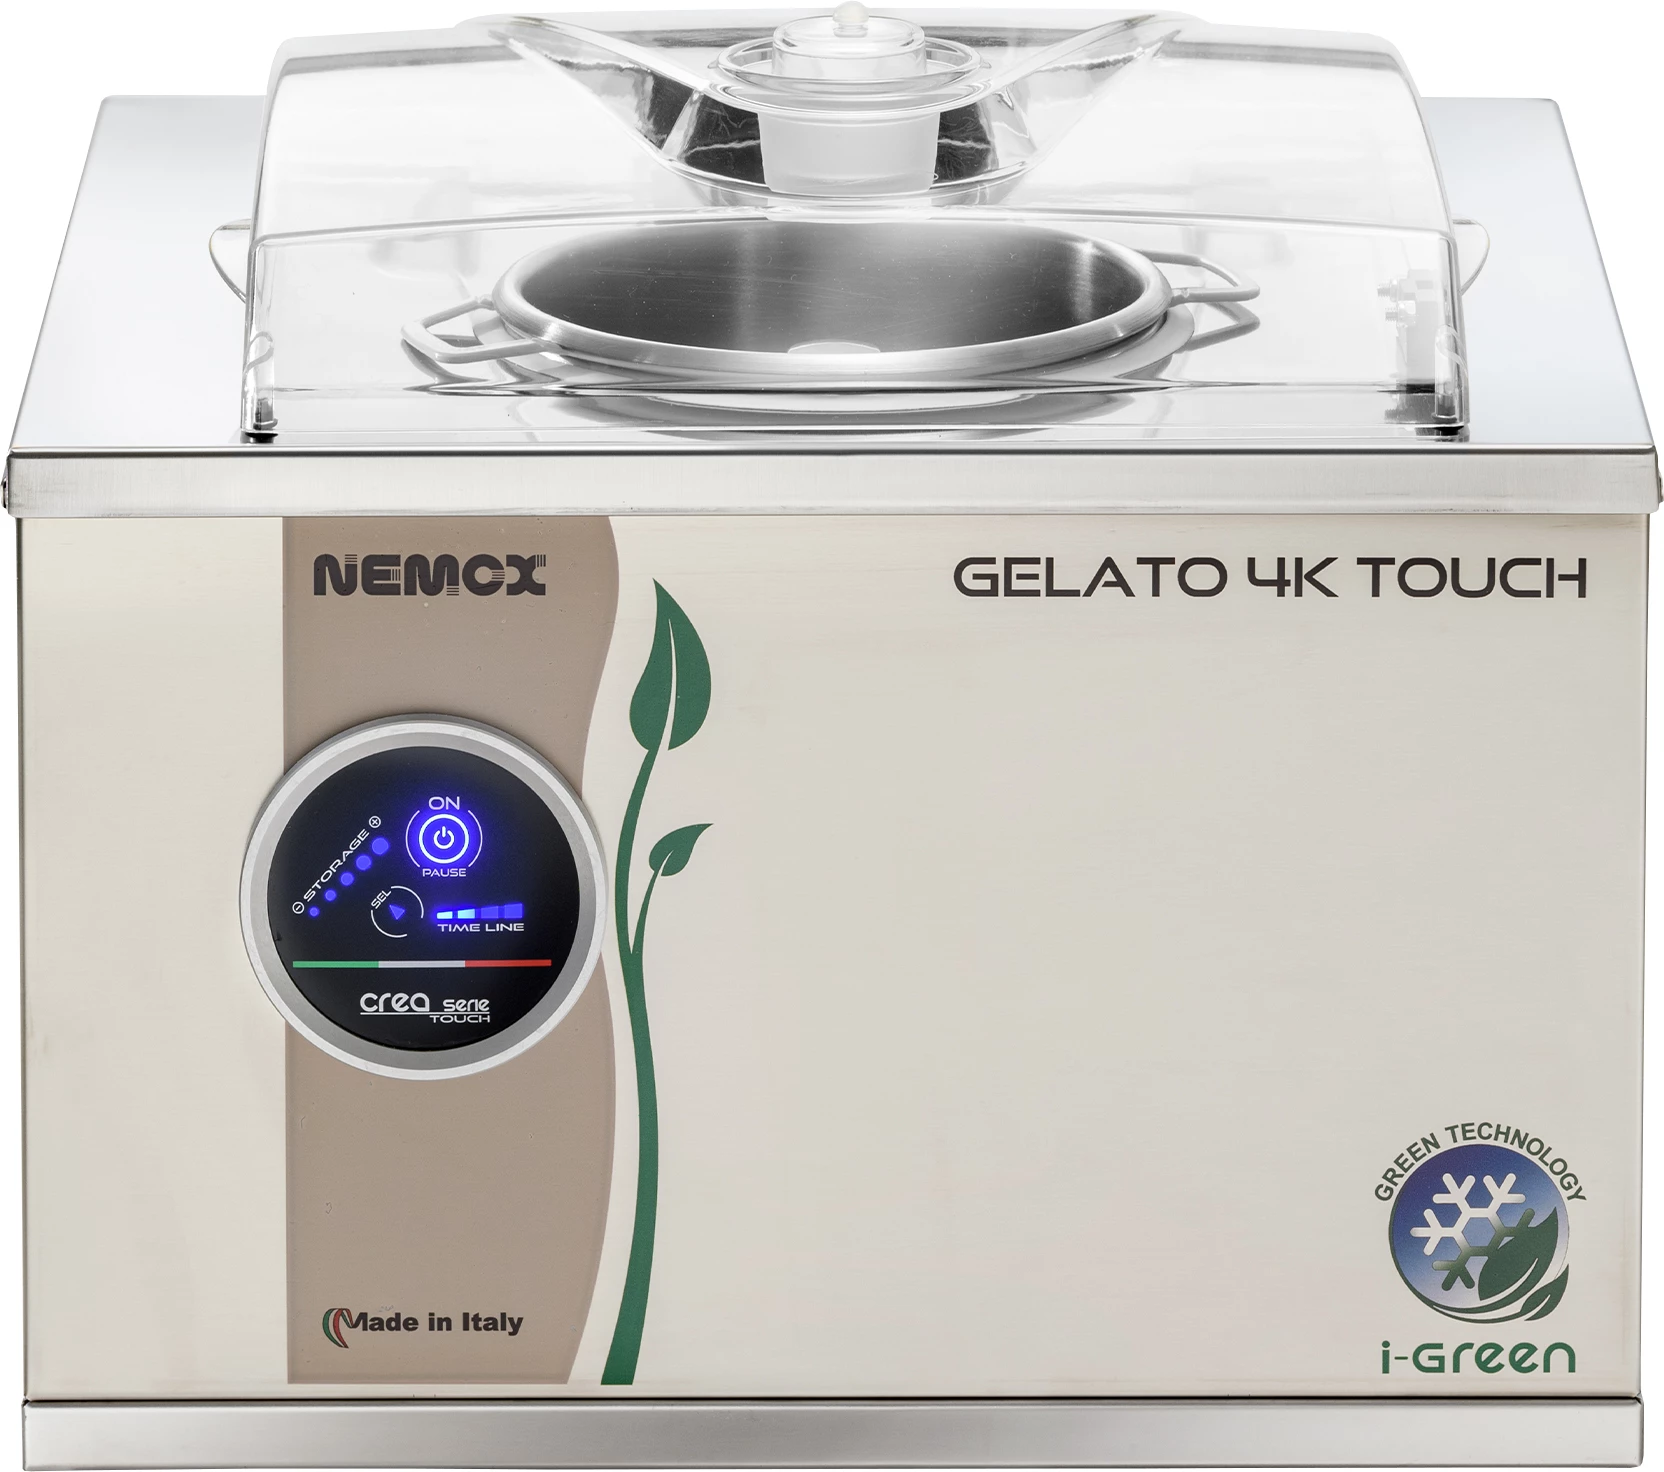 Nemox Gelato 4K touch ismaskine